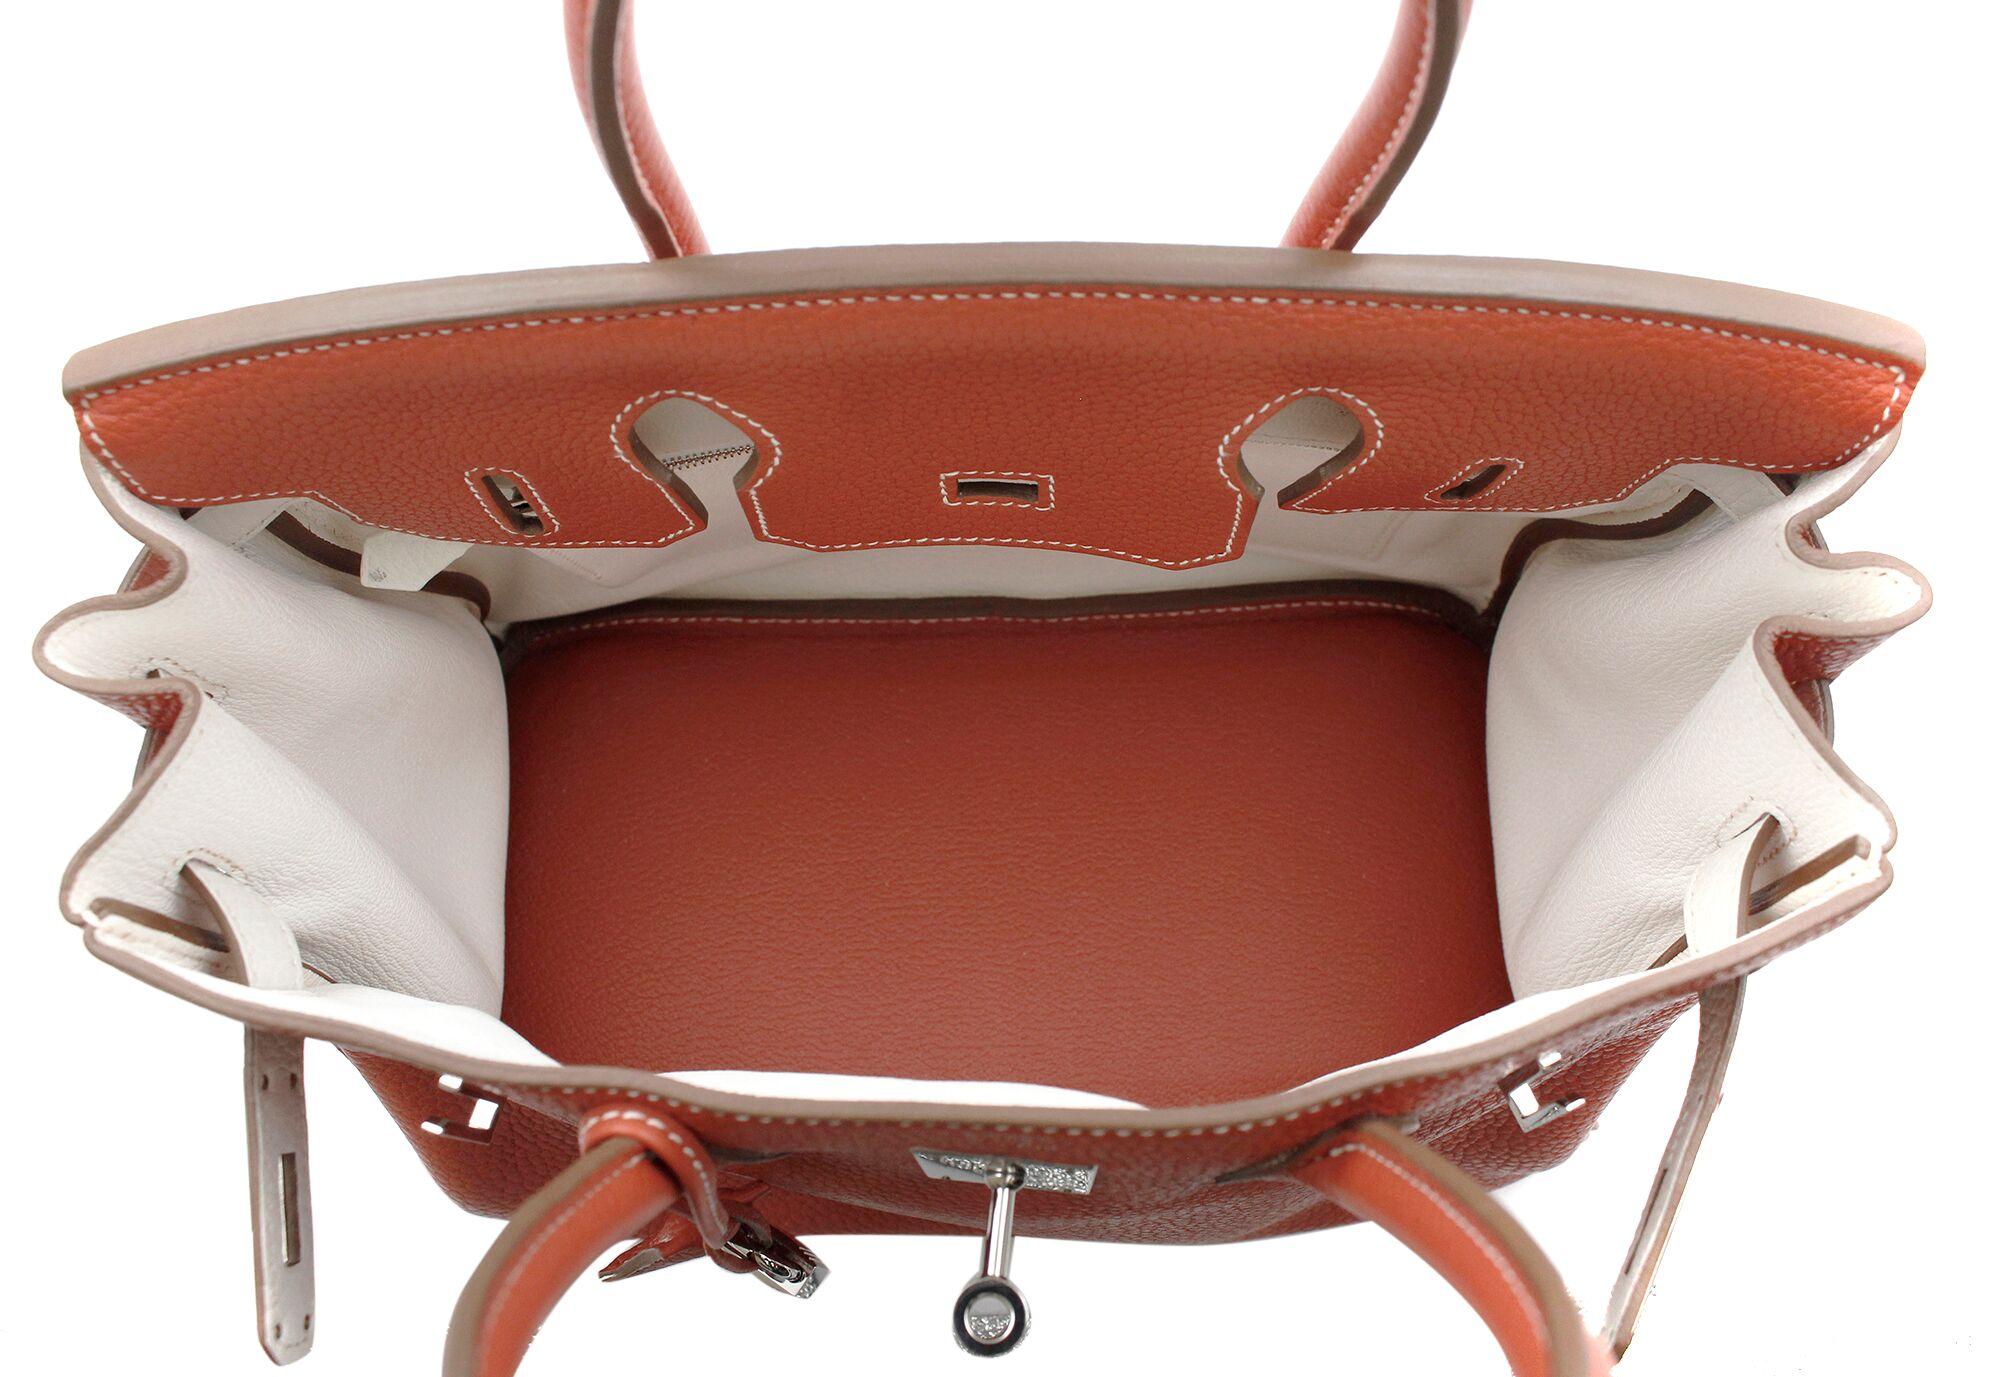 Hermès Birkin Limited Edition 30 Sanguine Orange/White Leather Satchel Bag 2